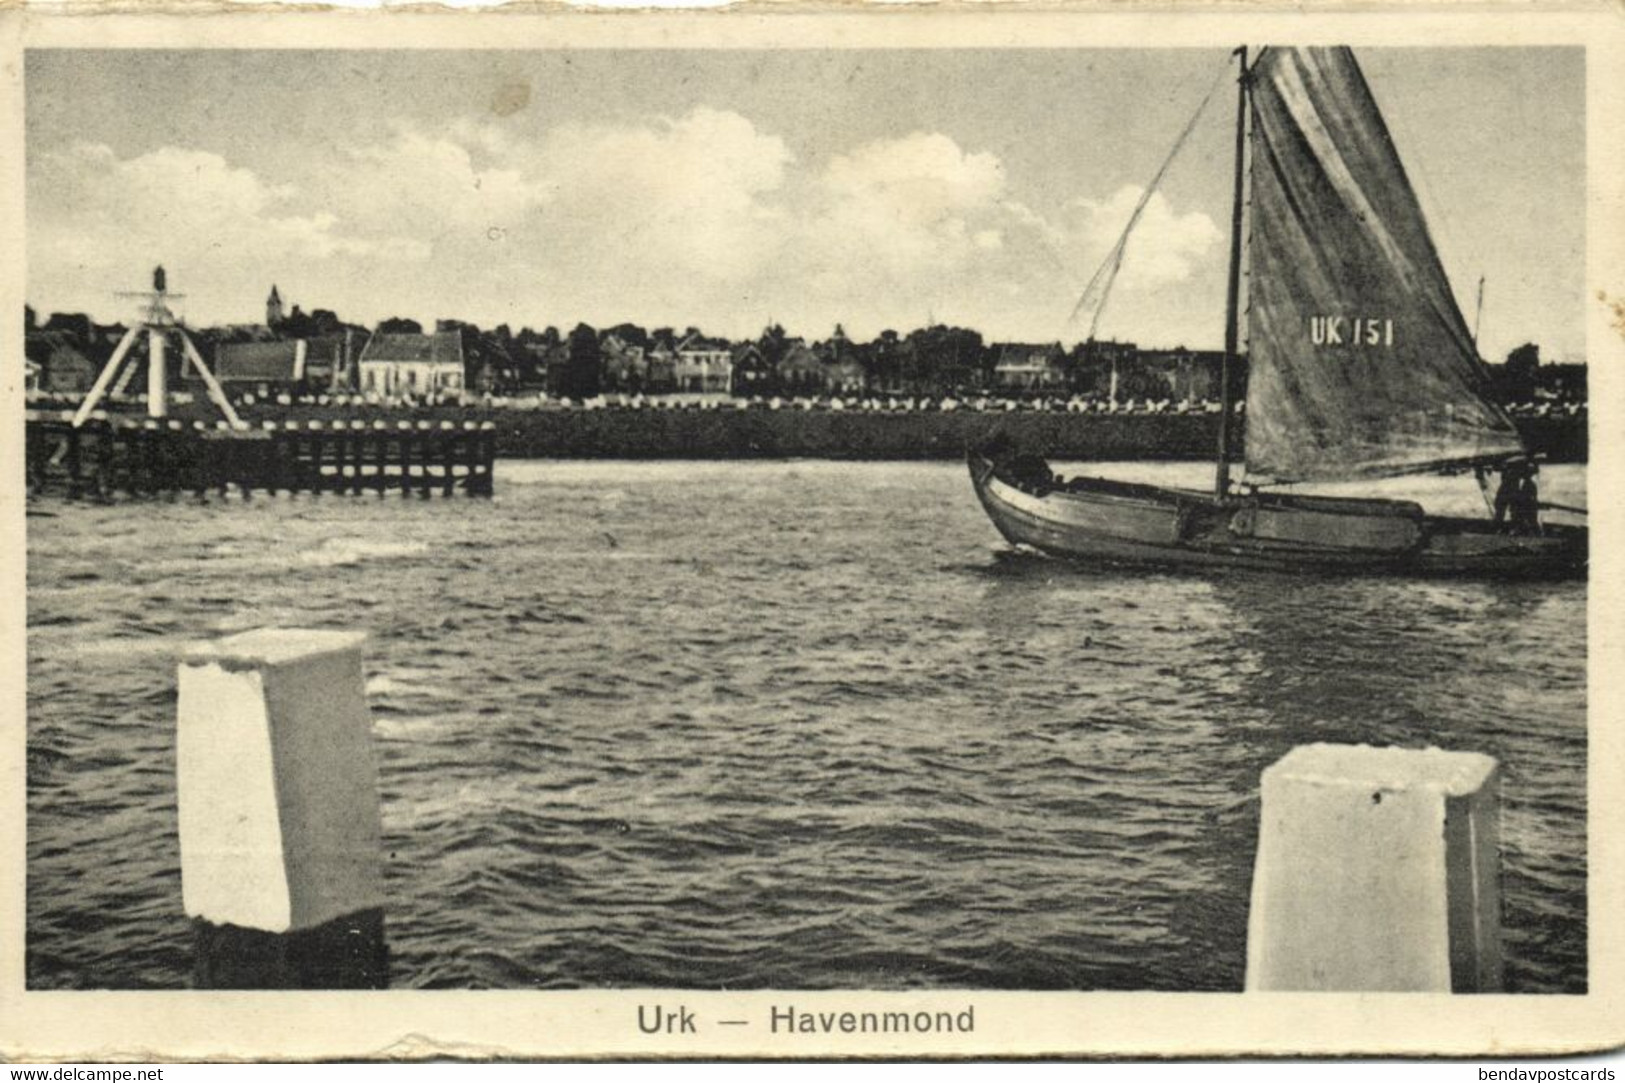 Nederland, URK, Havenmond Met Vissersboot UK151 (1935) Ansichtkaart - Urk